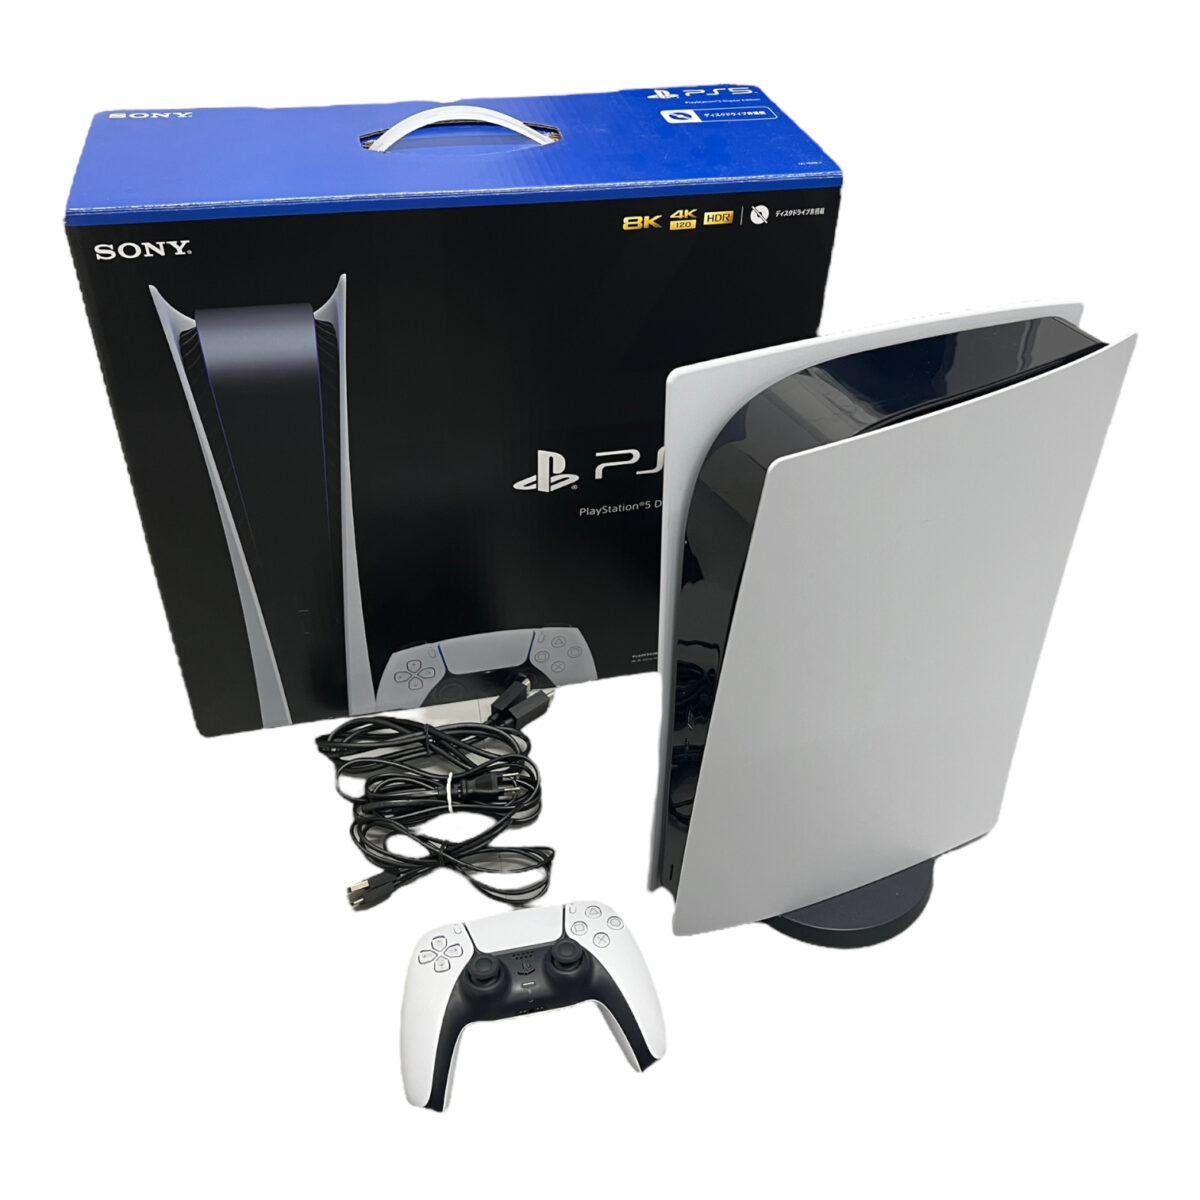 PlayStation5 デジタル・エディション CFI-1100B01-